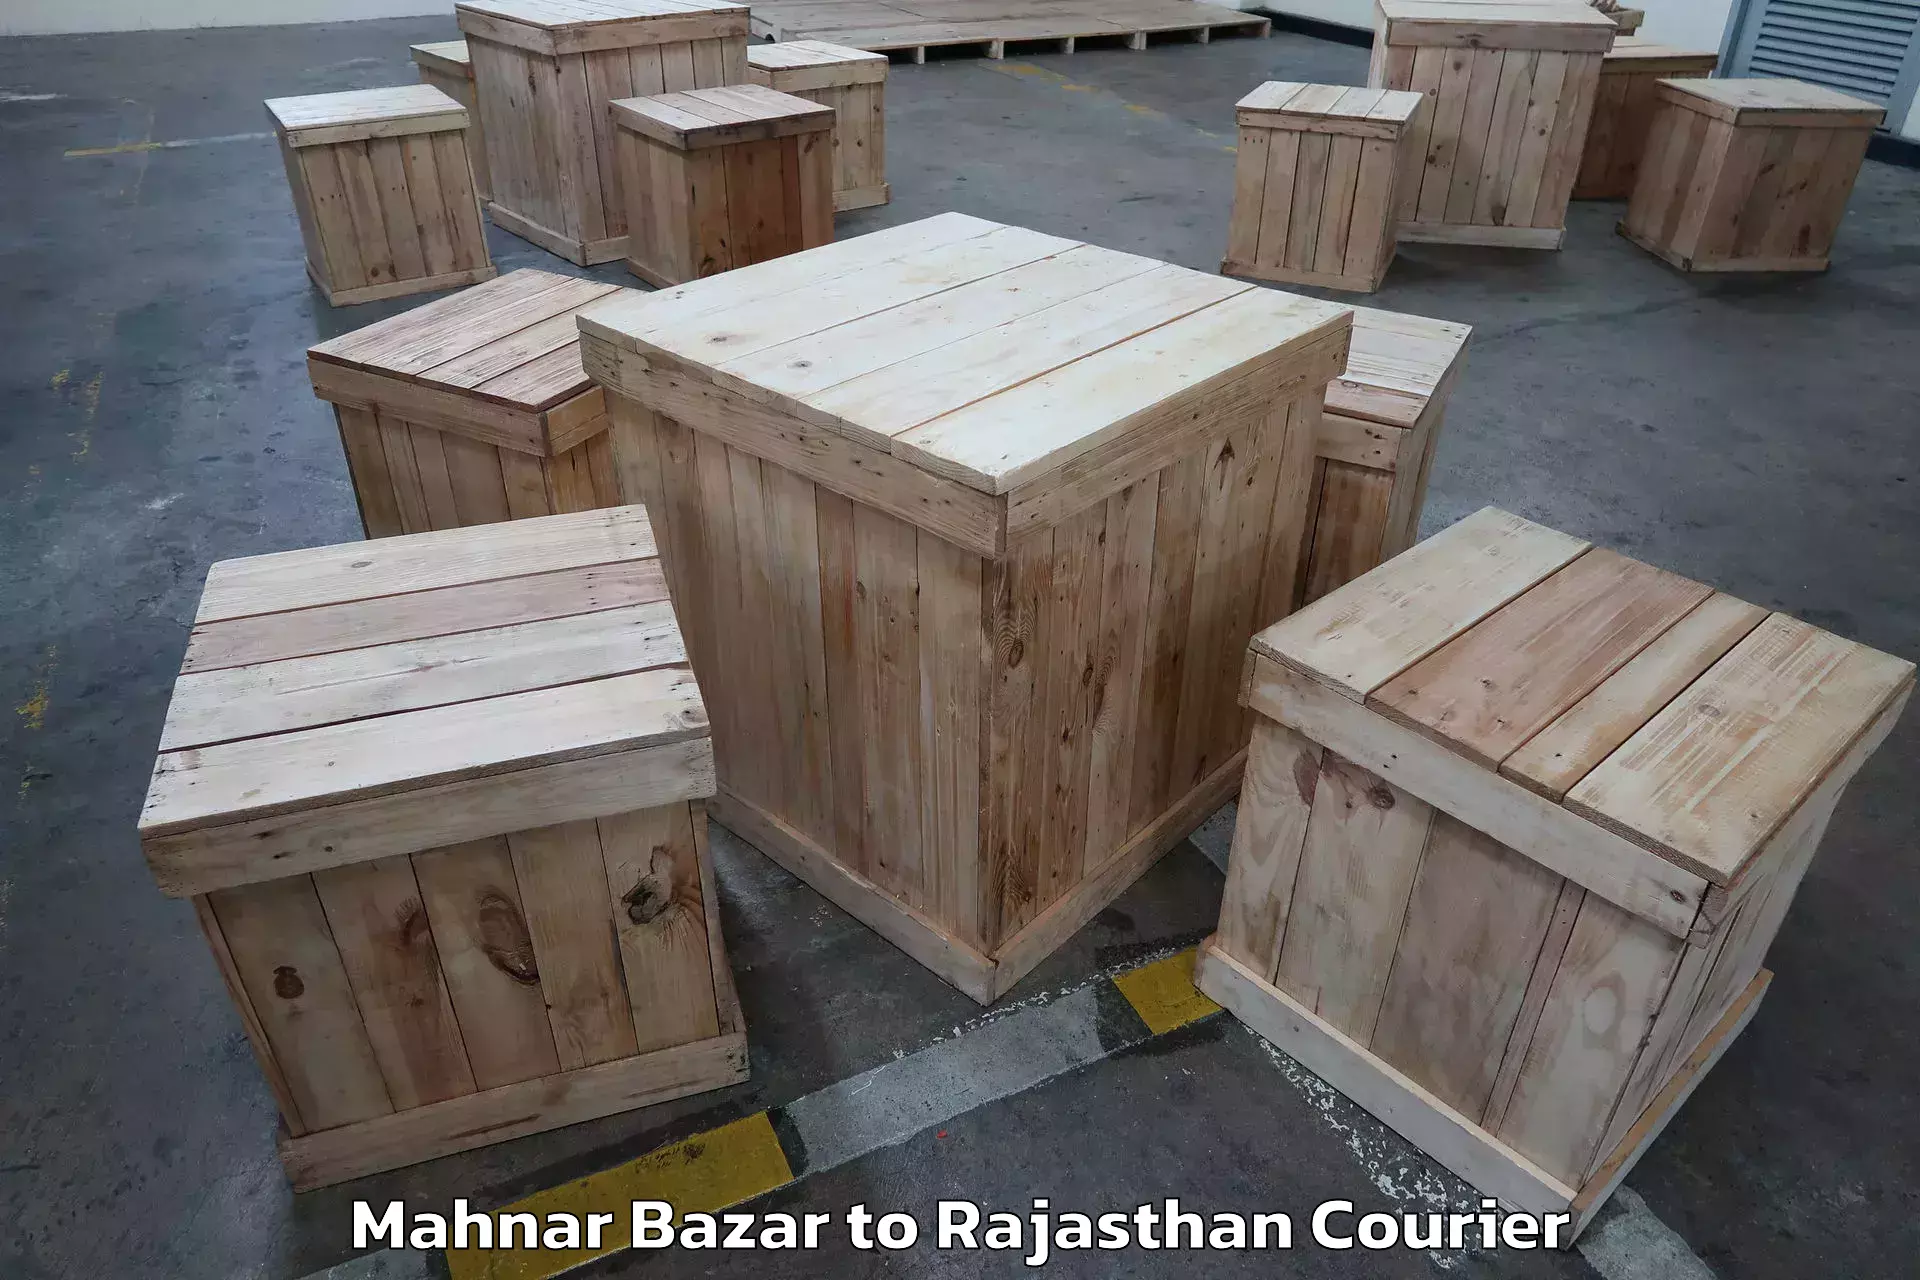 Furniture relocation experts Mahnar Bazar to Kota